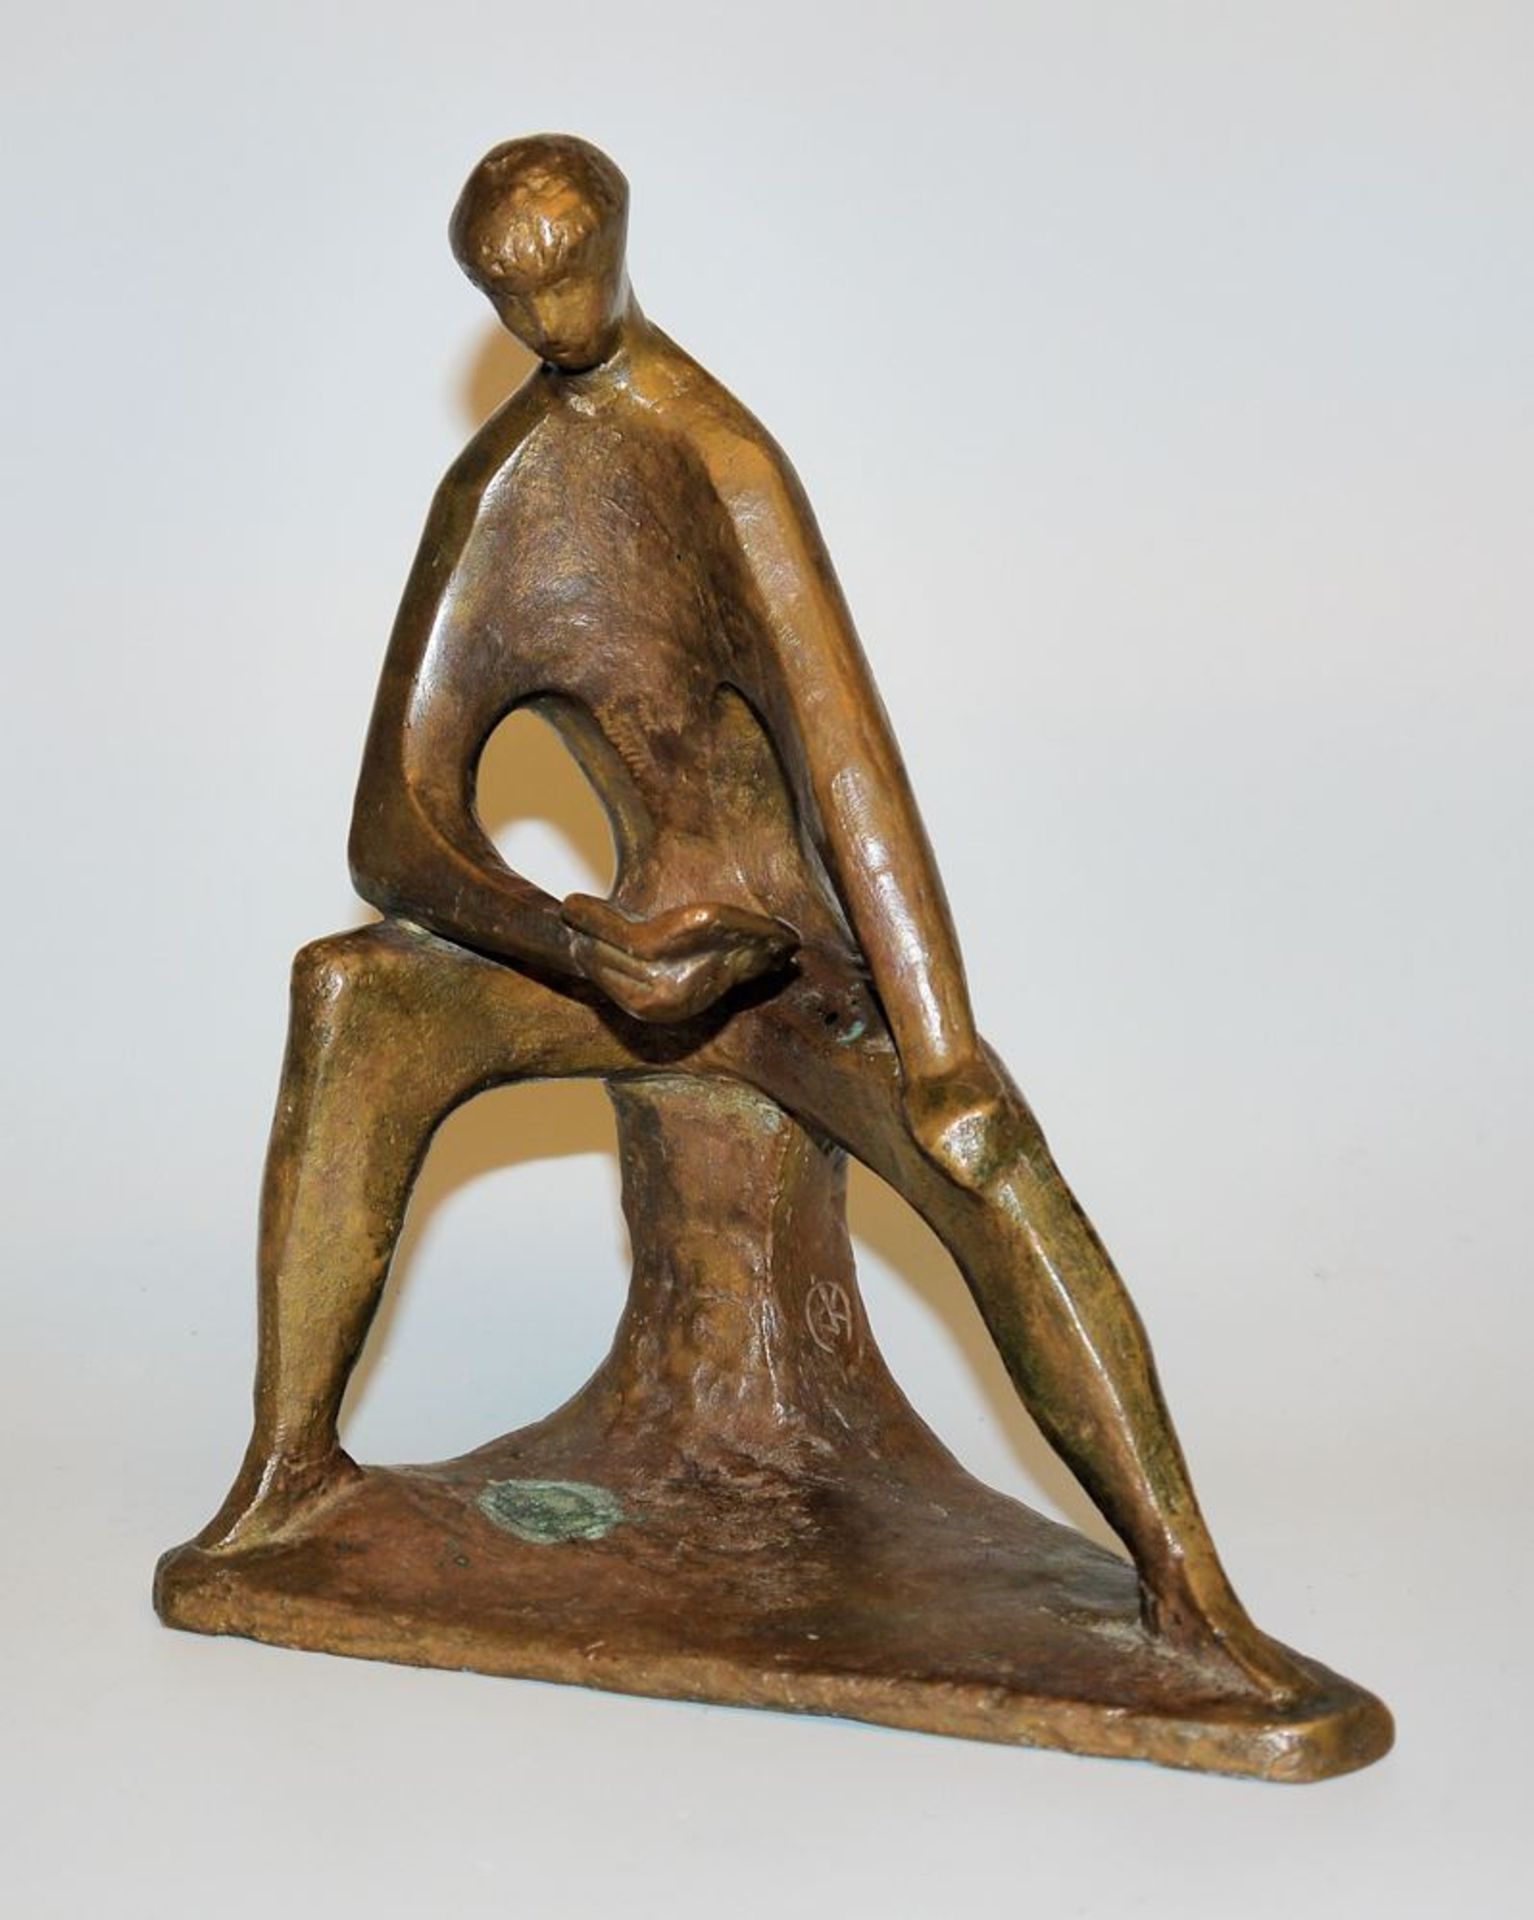 Joachim Karsch, Reading Man, bronze sculpture of the 1920s, foundry mark W. Füssel, Berlin